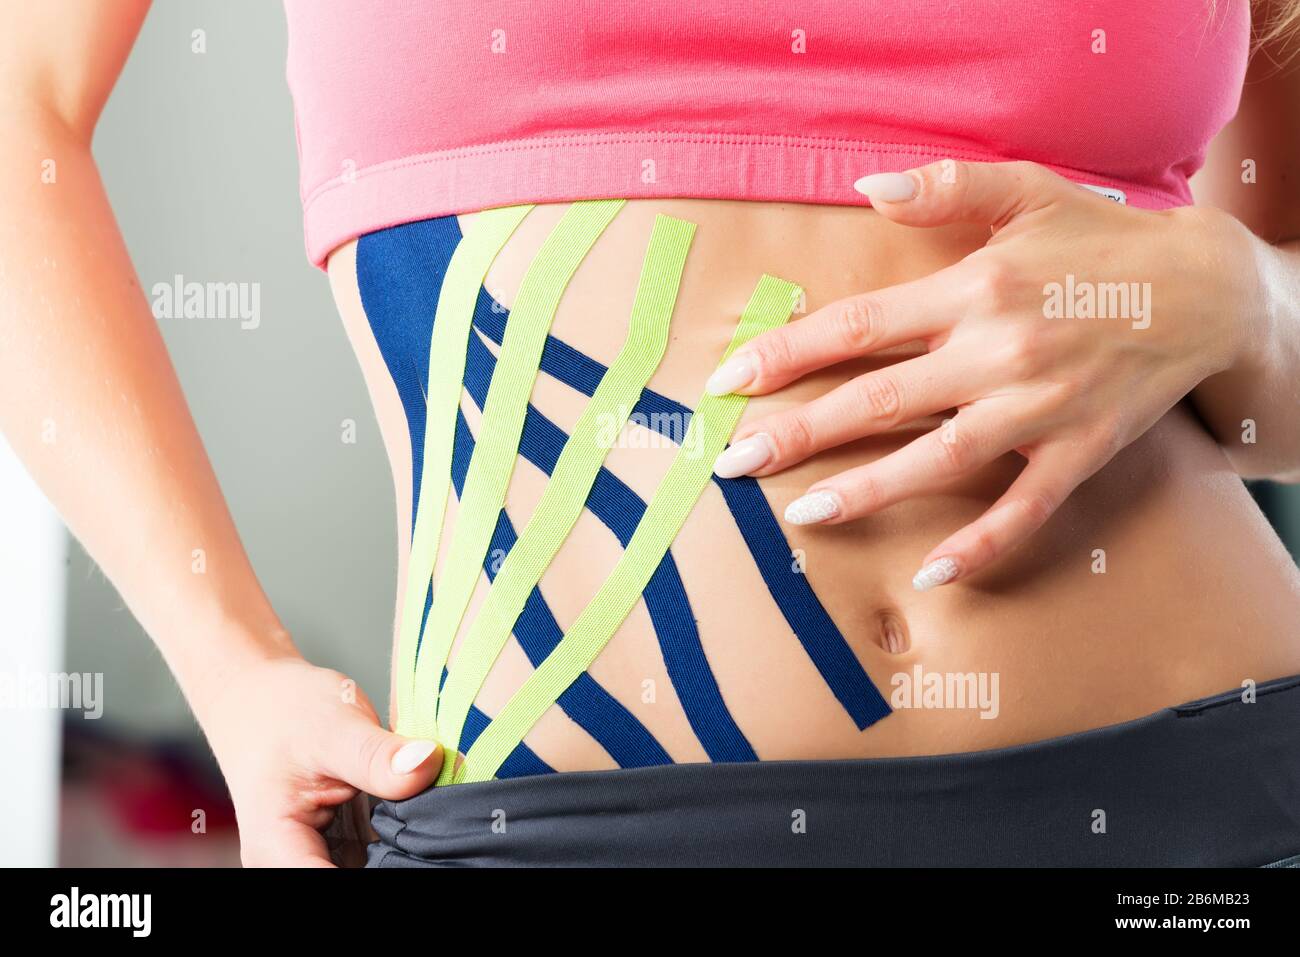 Helles medizinisches Klebeband am Bauch eines Mädchens Stockfotografie -  Alamy